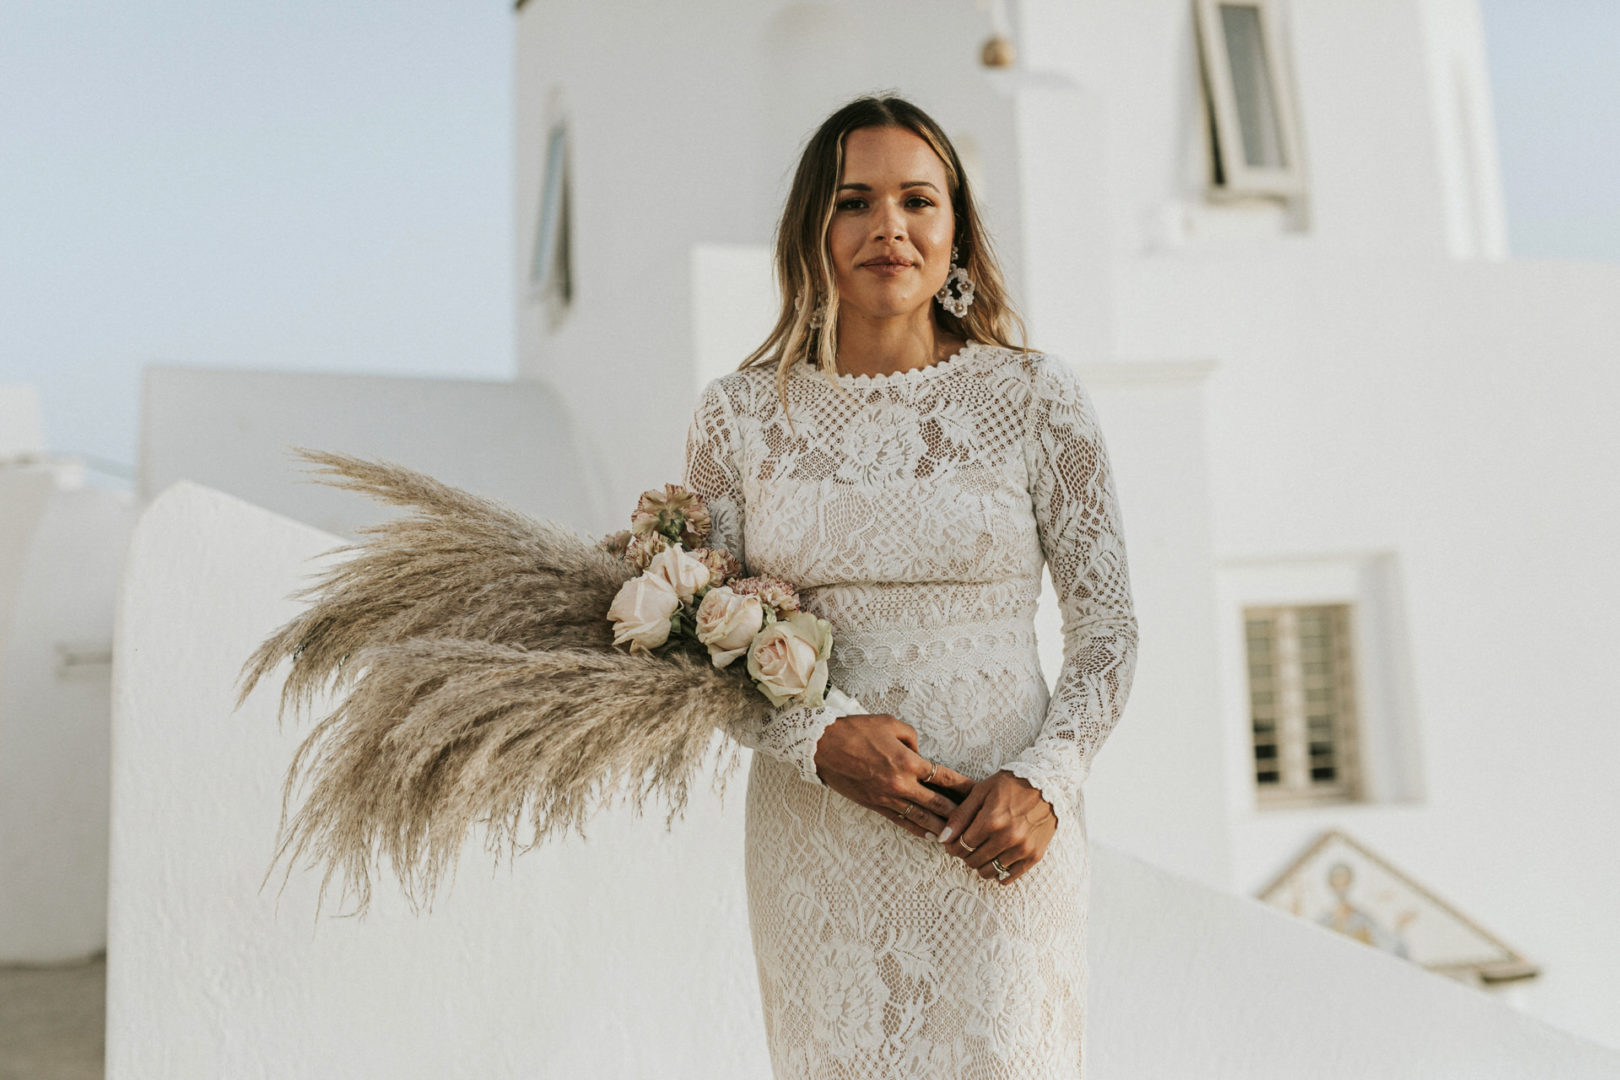 Bridal bouquet with pampass grass Santorini